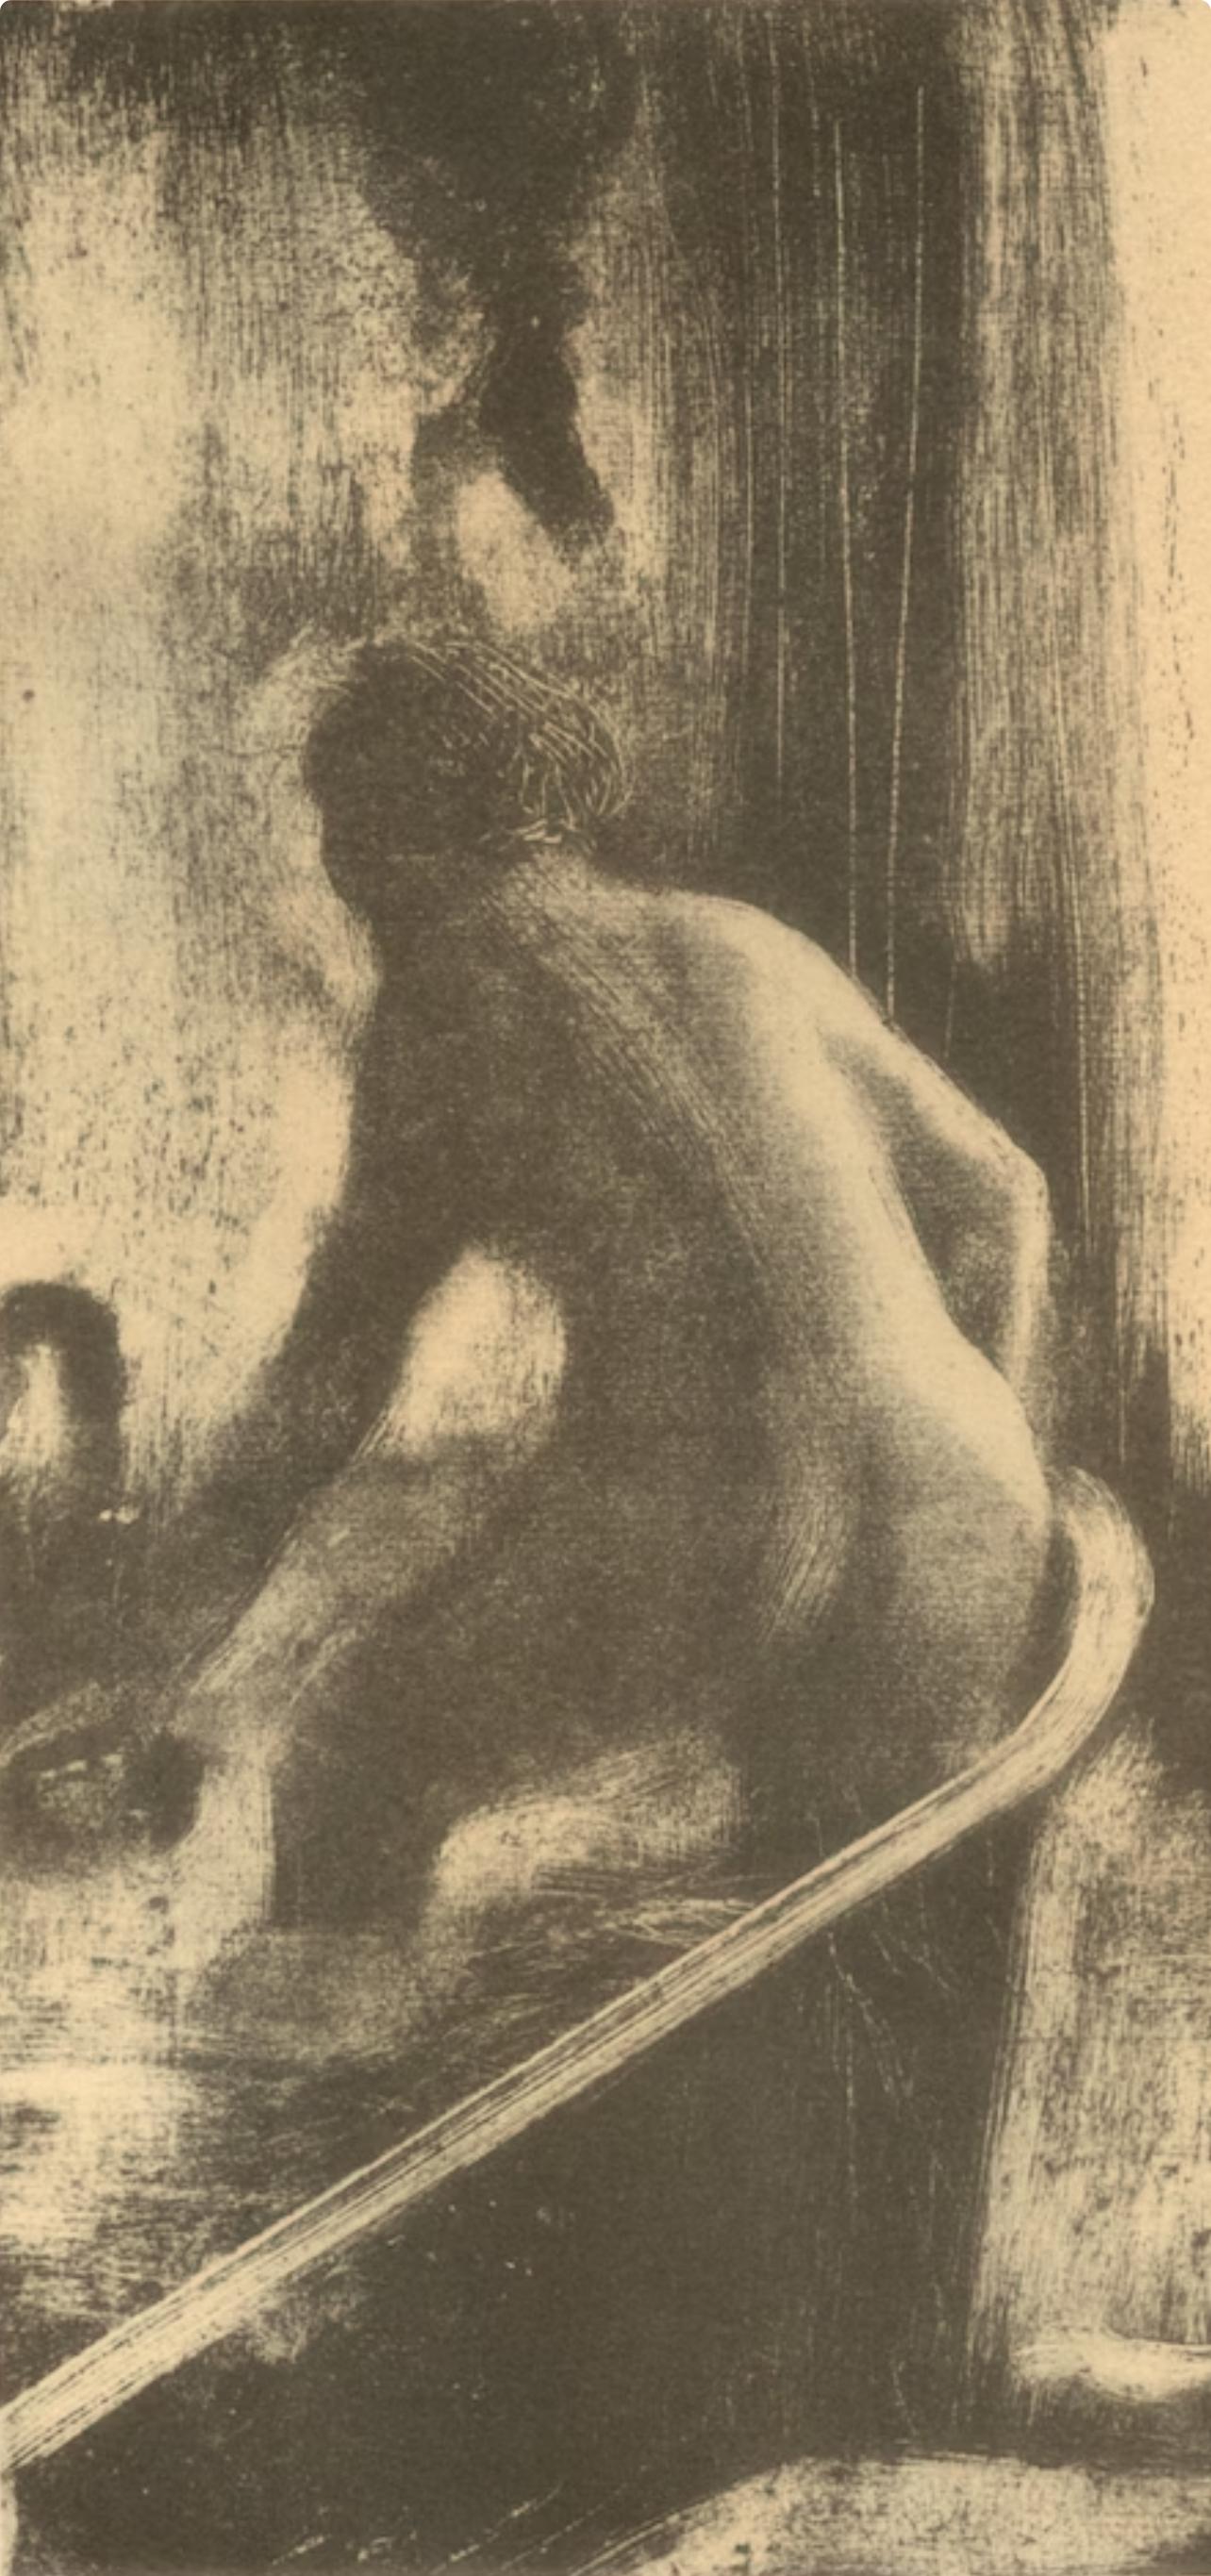 Degas, Femme dans la Baignoire, Les Monotypes (nach) – Print von Edgar Degas